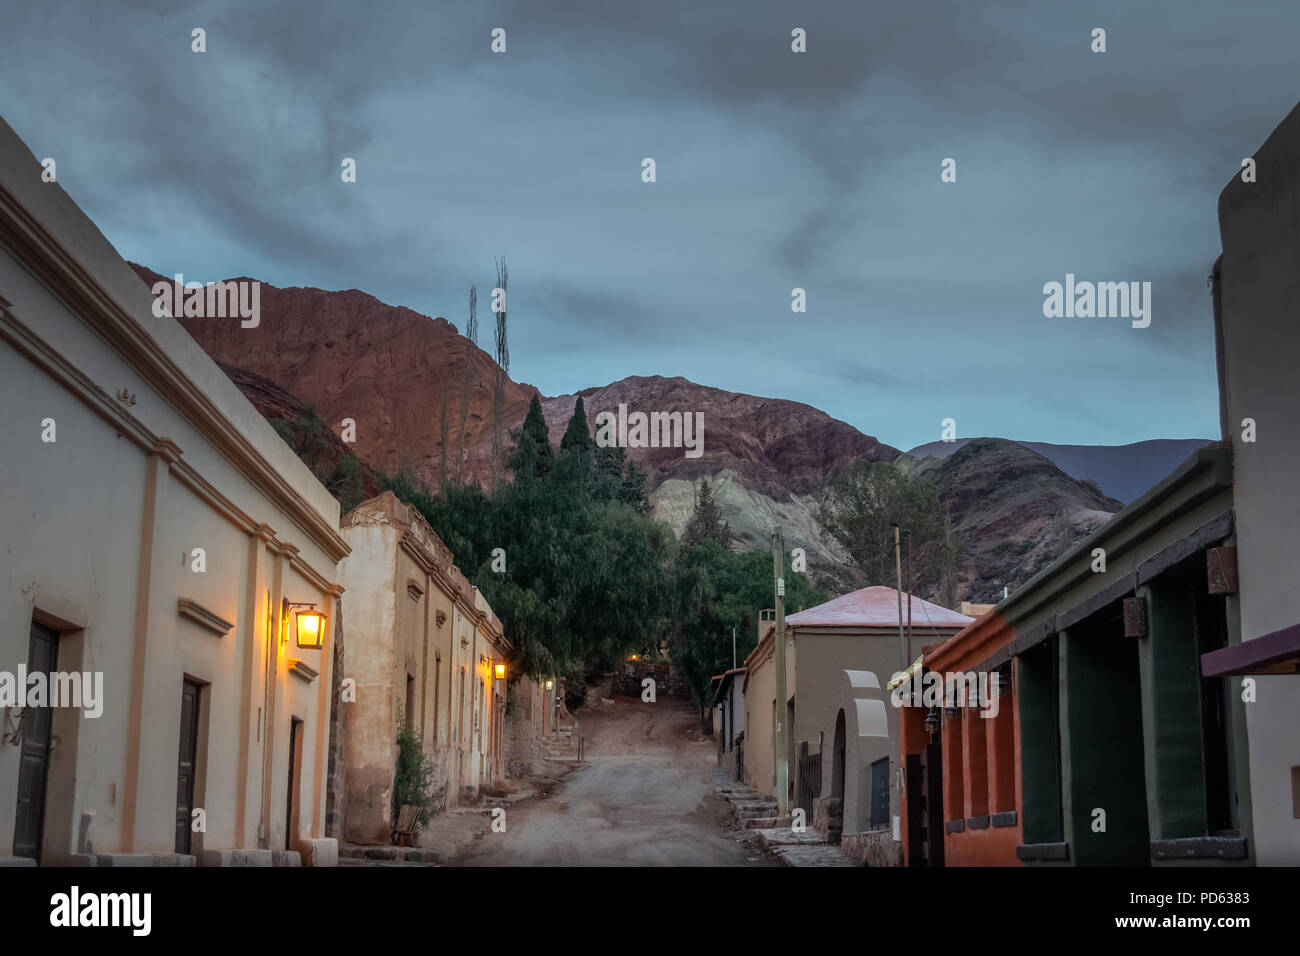 La ville de Purmamarca de nuit avec la colline des sept couleurs (Cerro de los Siete Colores) sur arrière-plan - Purmamarca, Jujuy, Argentine Banque D'Images